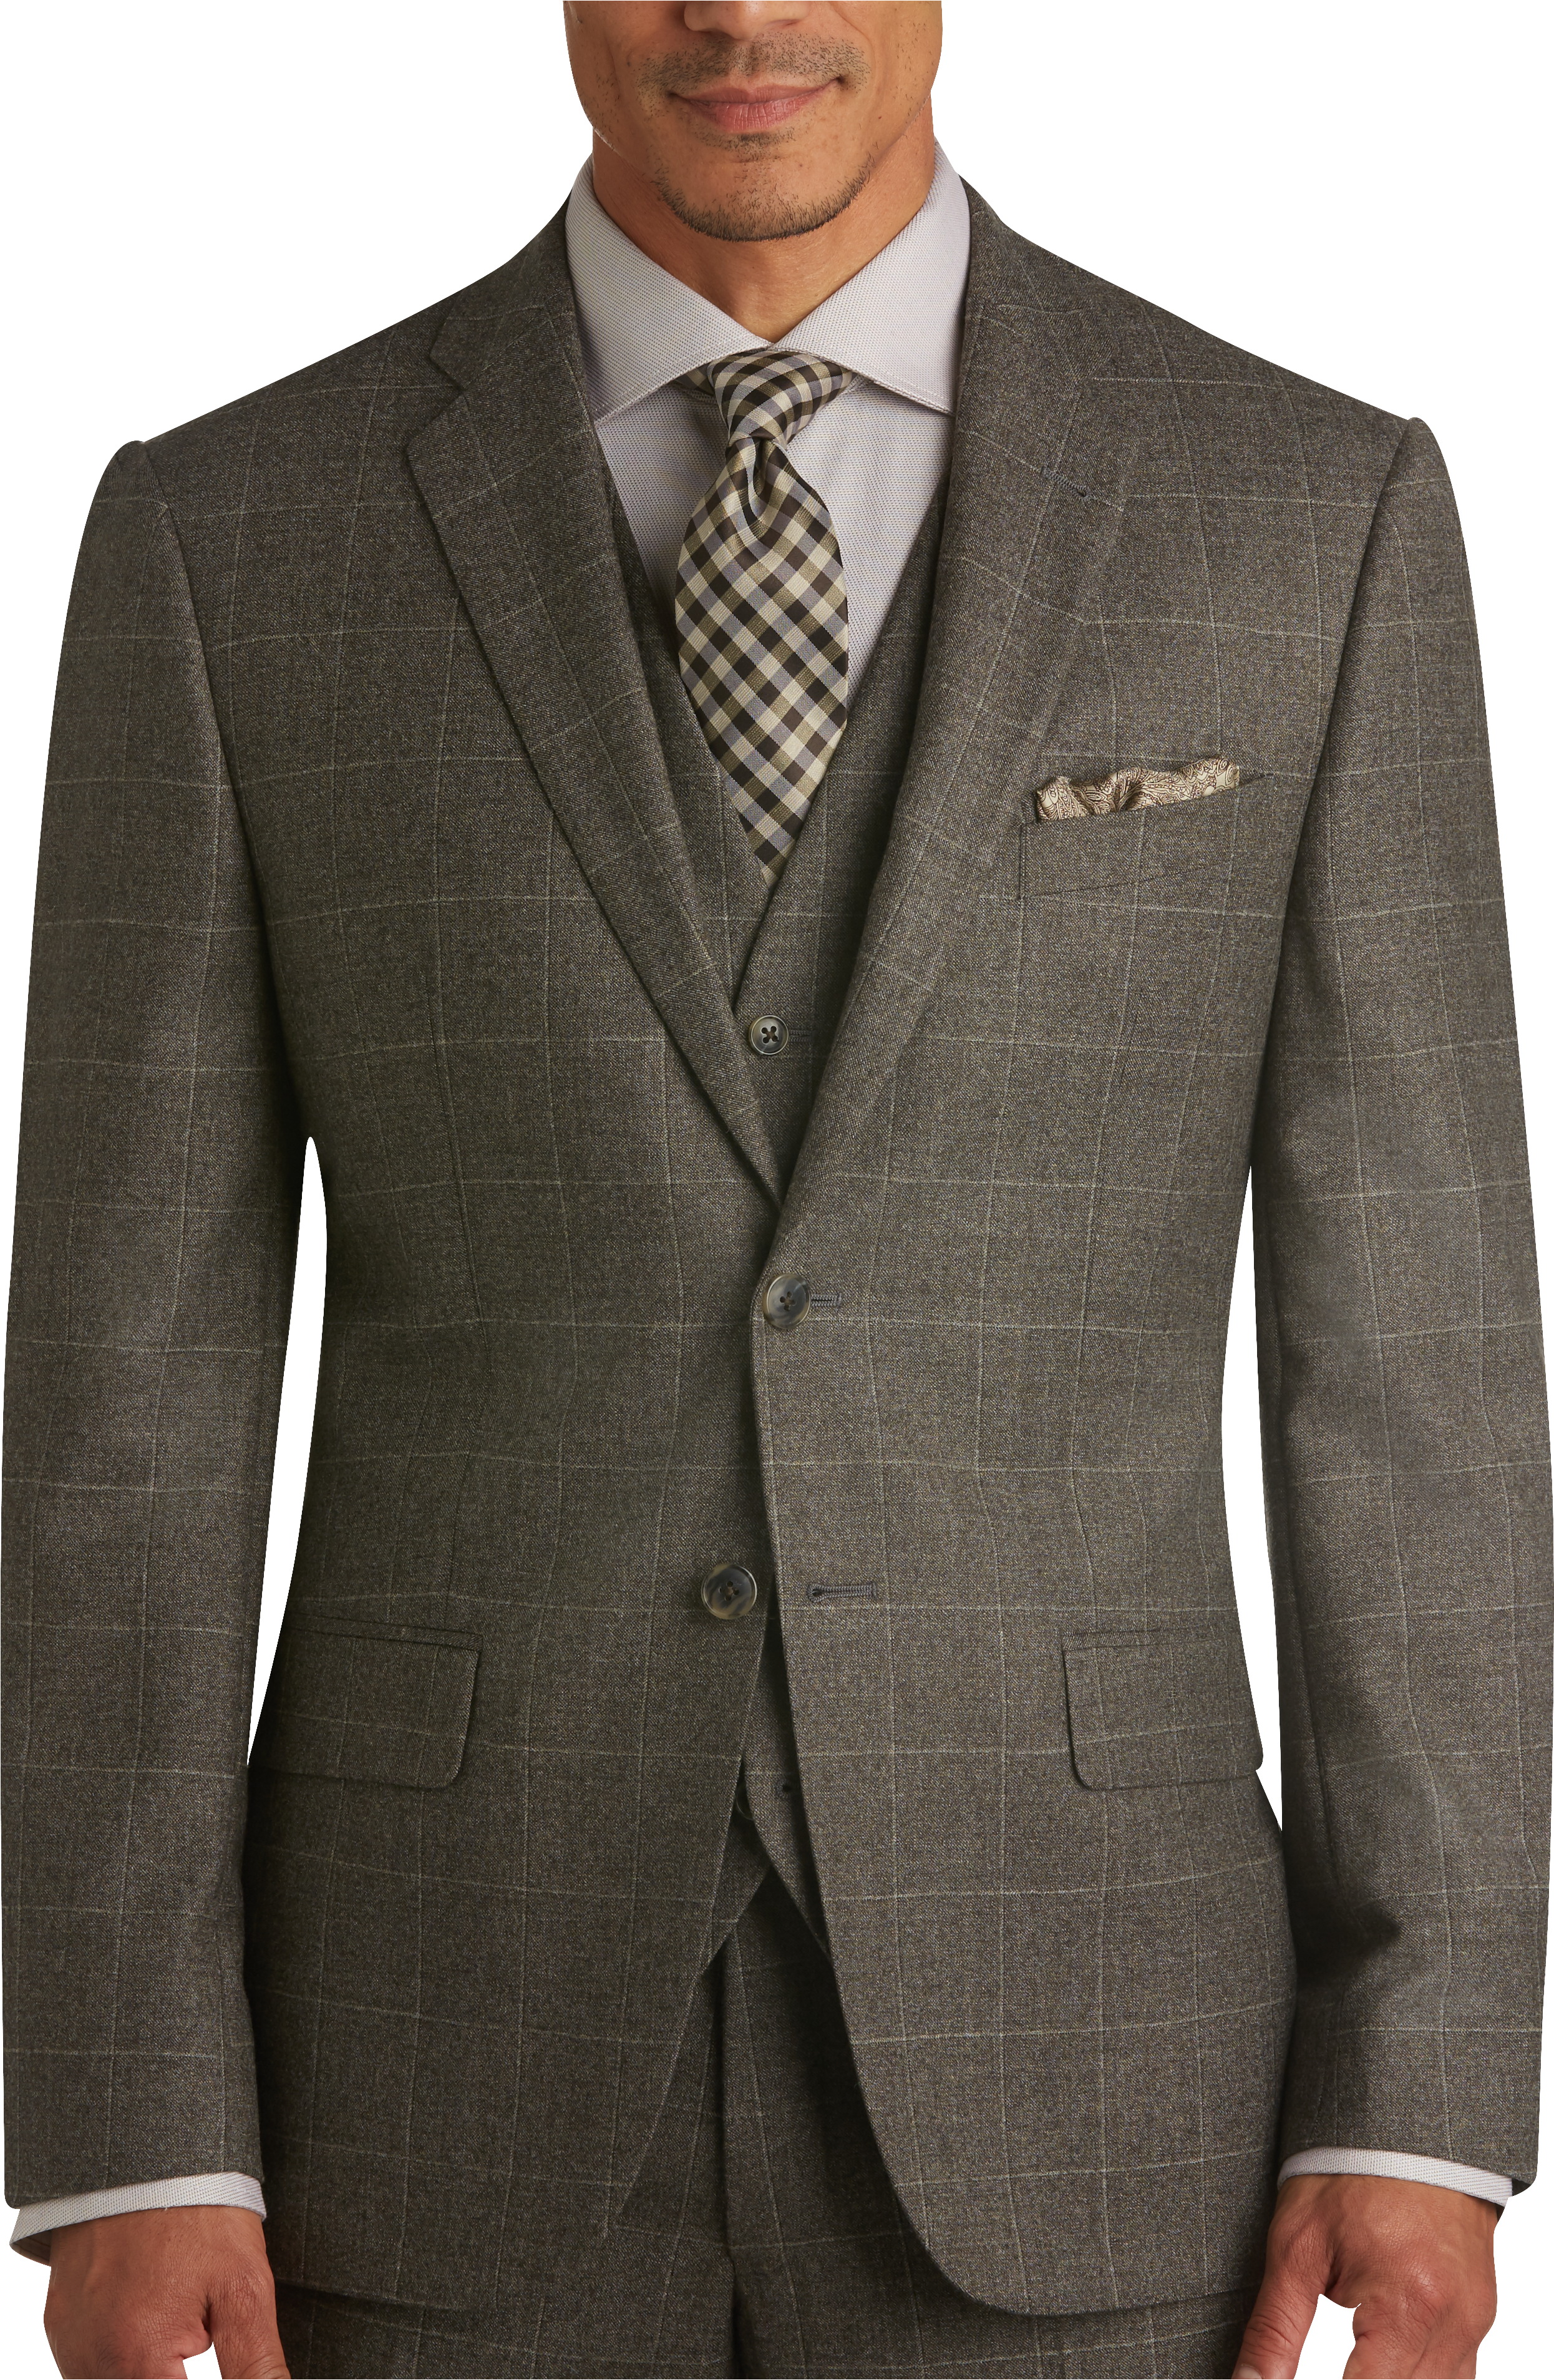 Joseph Abboud Brown Windowpane Plaid Slim Fit Vested Suit - Men's Sale ...